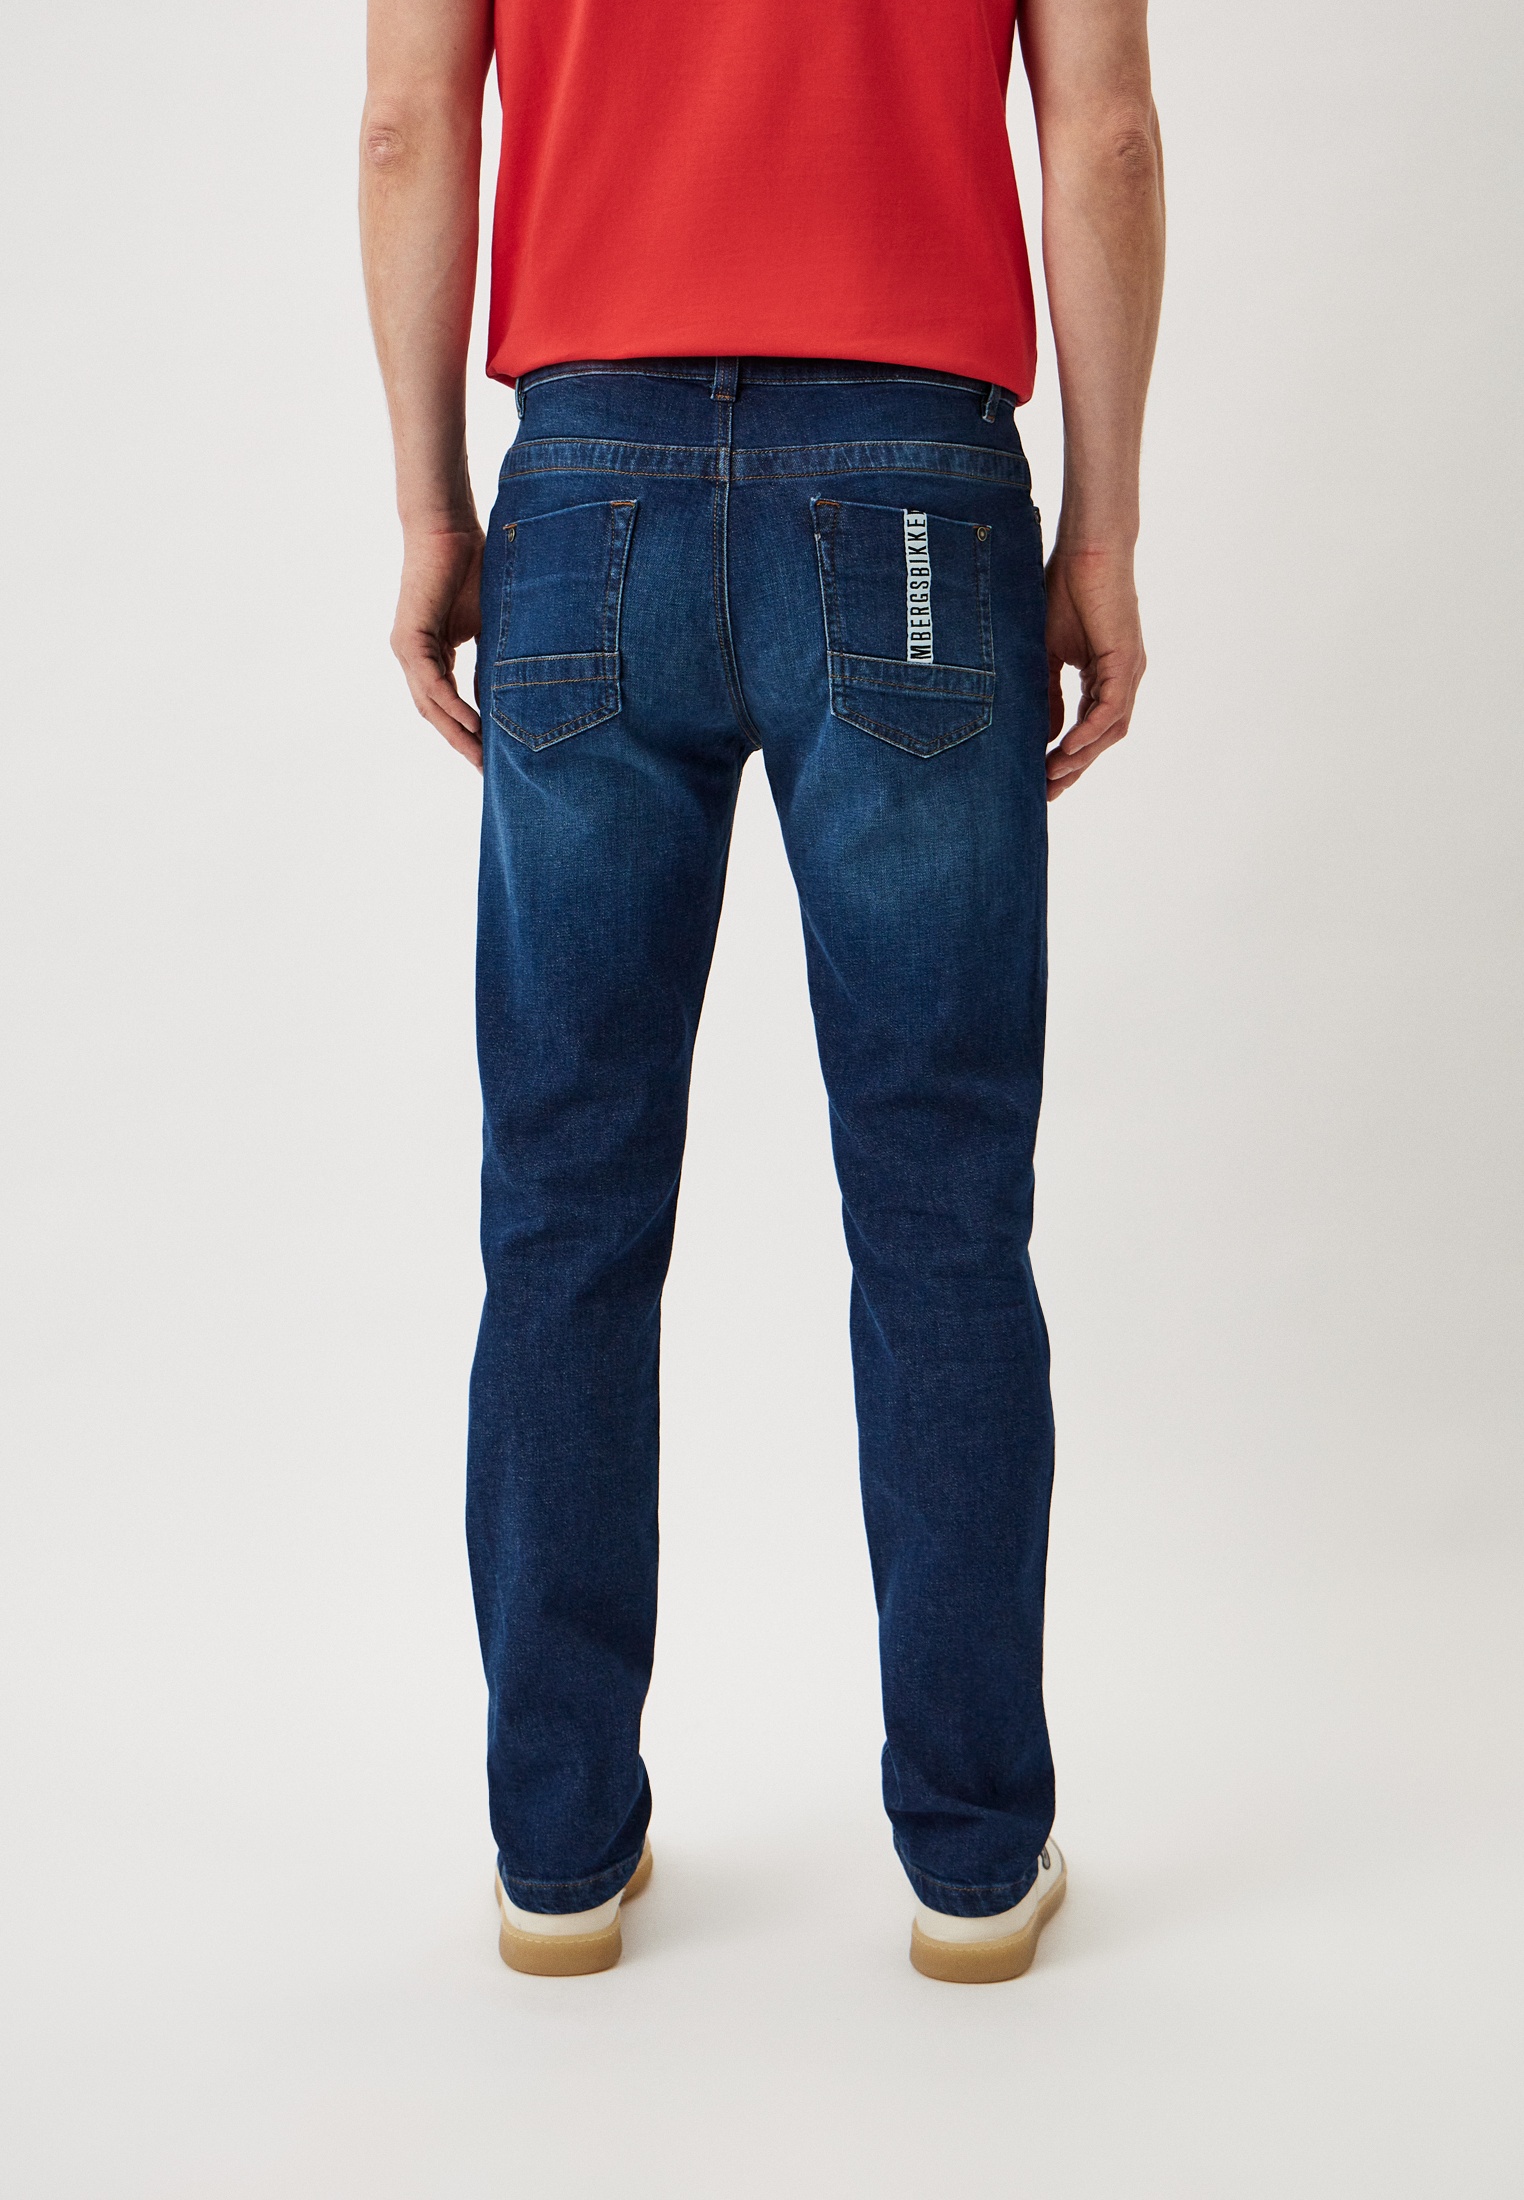 Мужские прямые джинсы Bikkembergs (Биккембергс) CQ10222S3976: изображение 7